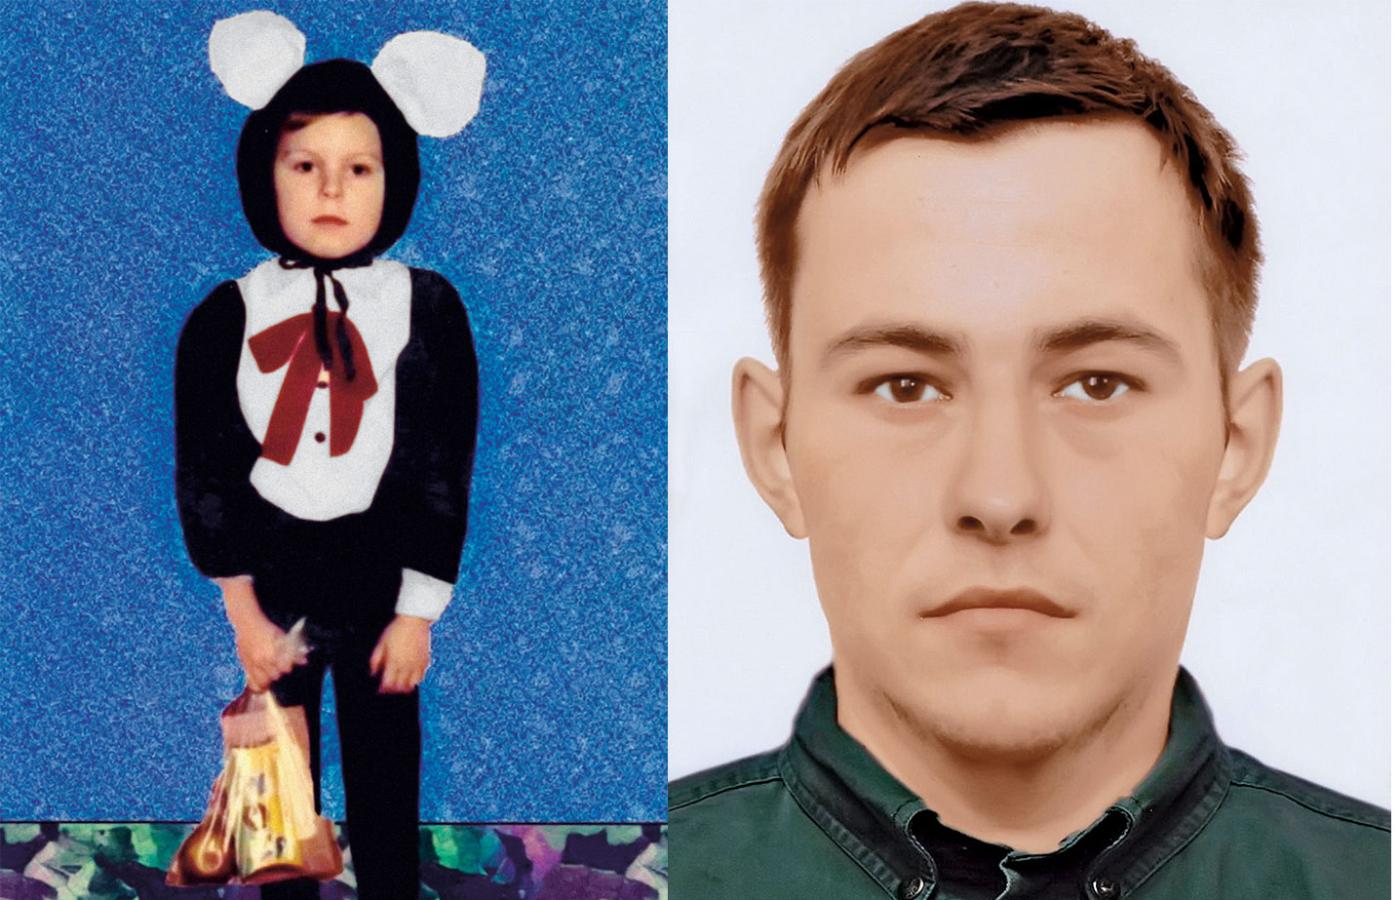 Portret progresywny zaginionego w wieku czterech lat Tomka Cichowicza. Z lewej: mały Tomek.